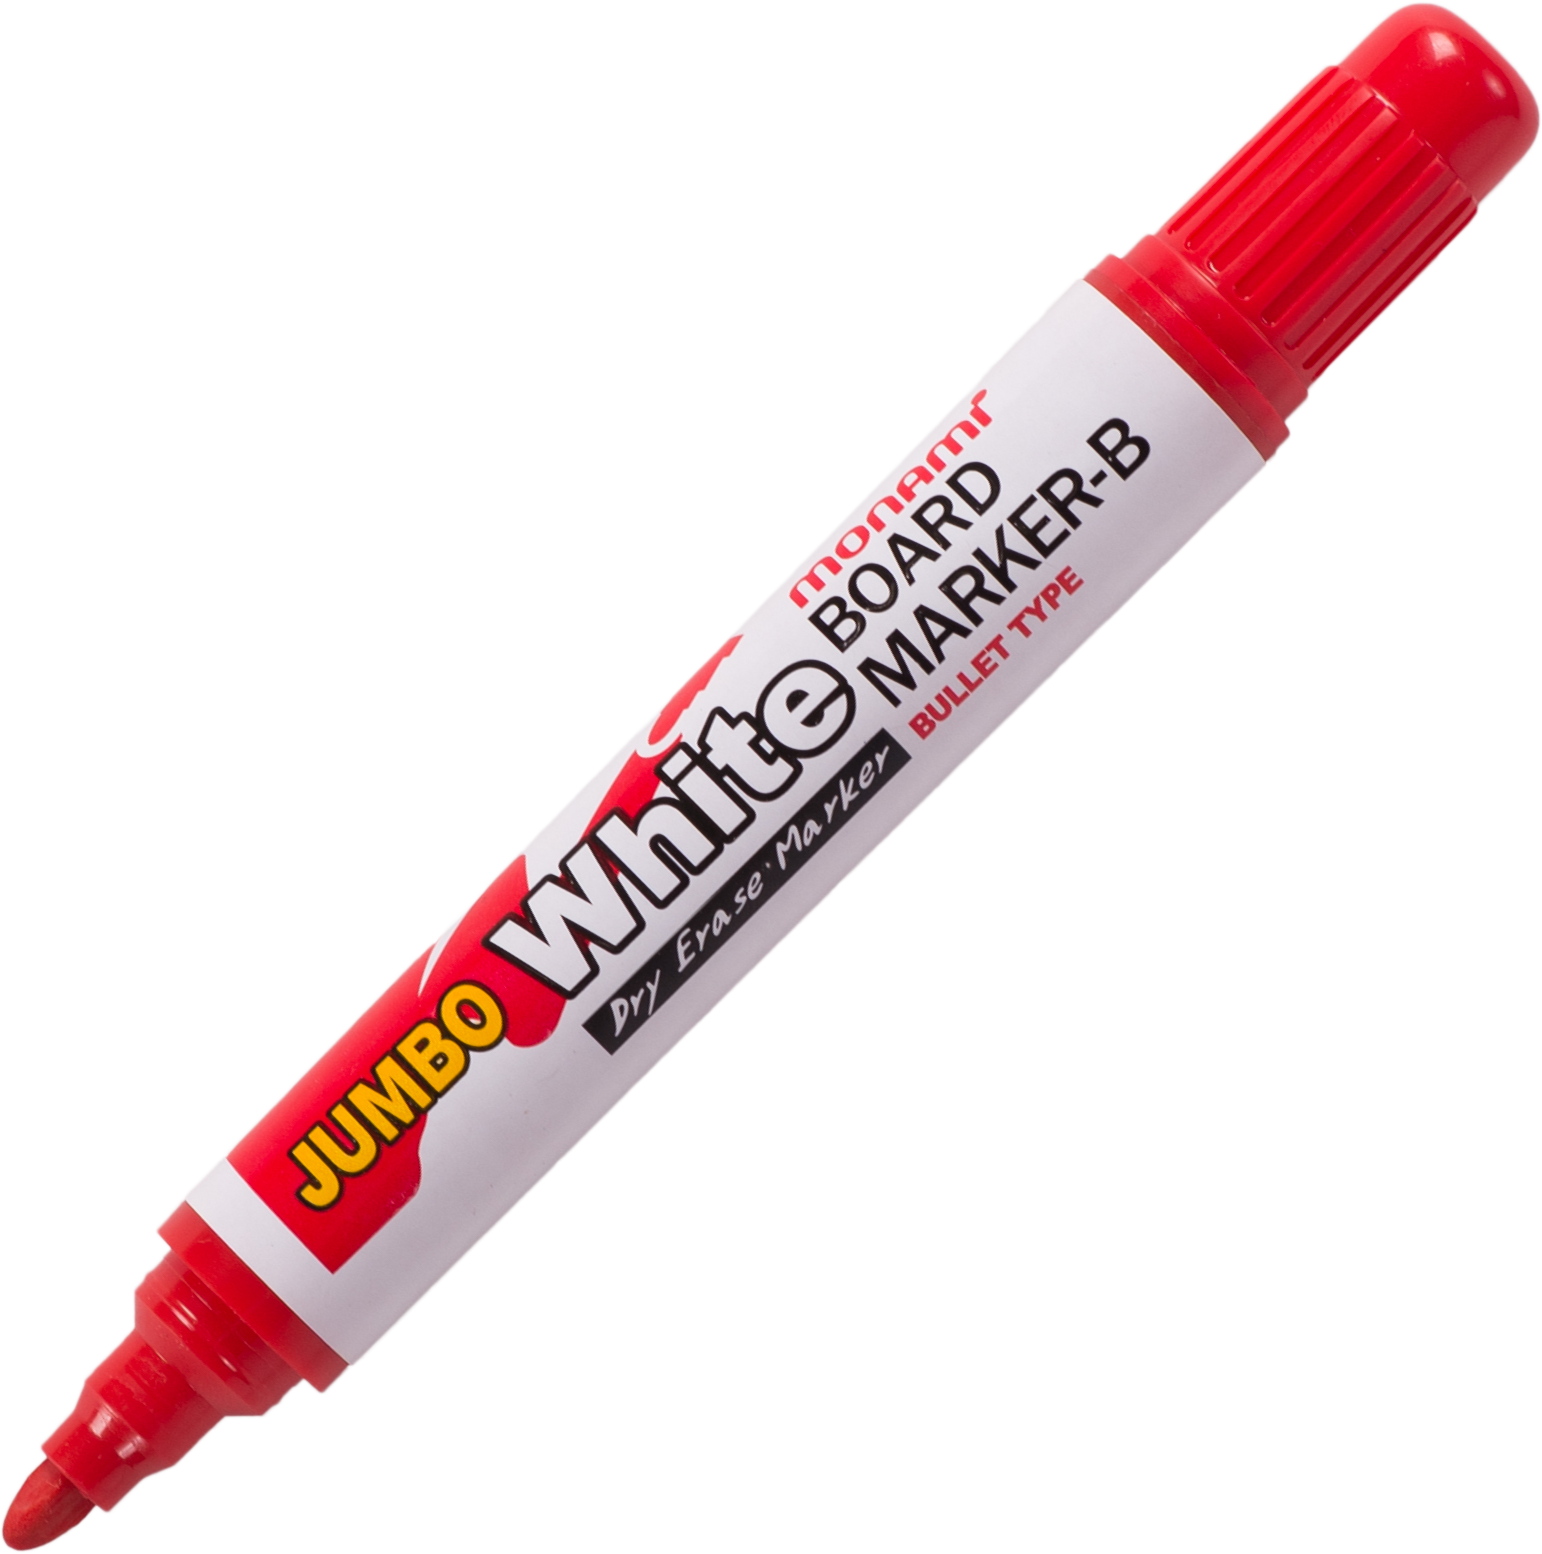 ปากกาไวท์บอร์ดโมนามิ หัวกลม รุ่นจัมโบ้ สีแดง